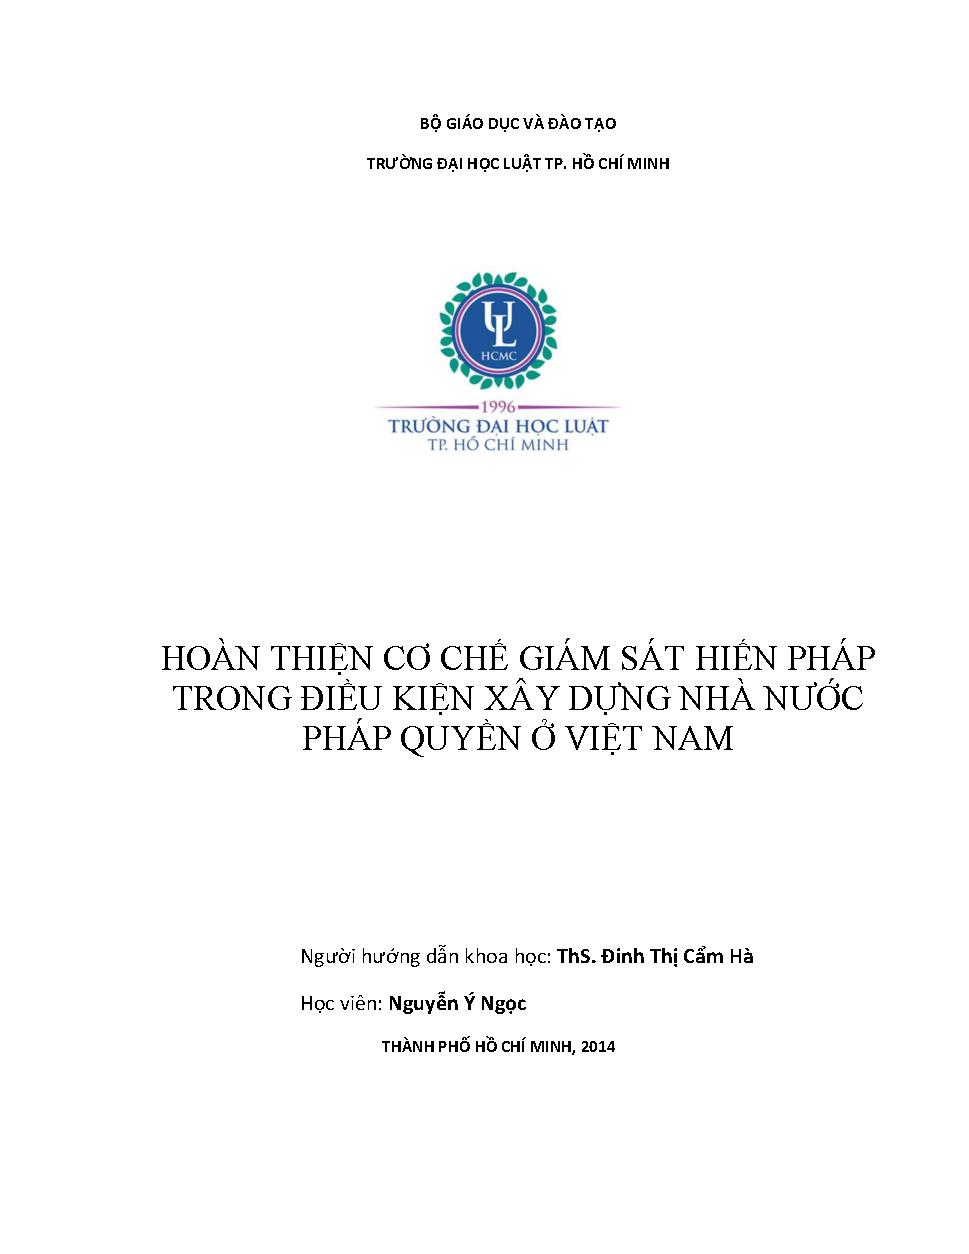 Hoàn thiện cơ chế giám sát Hiến pháp trong điều kiện xây dựng nhà nước pháp quyền ở Việt Nam